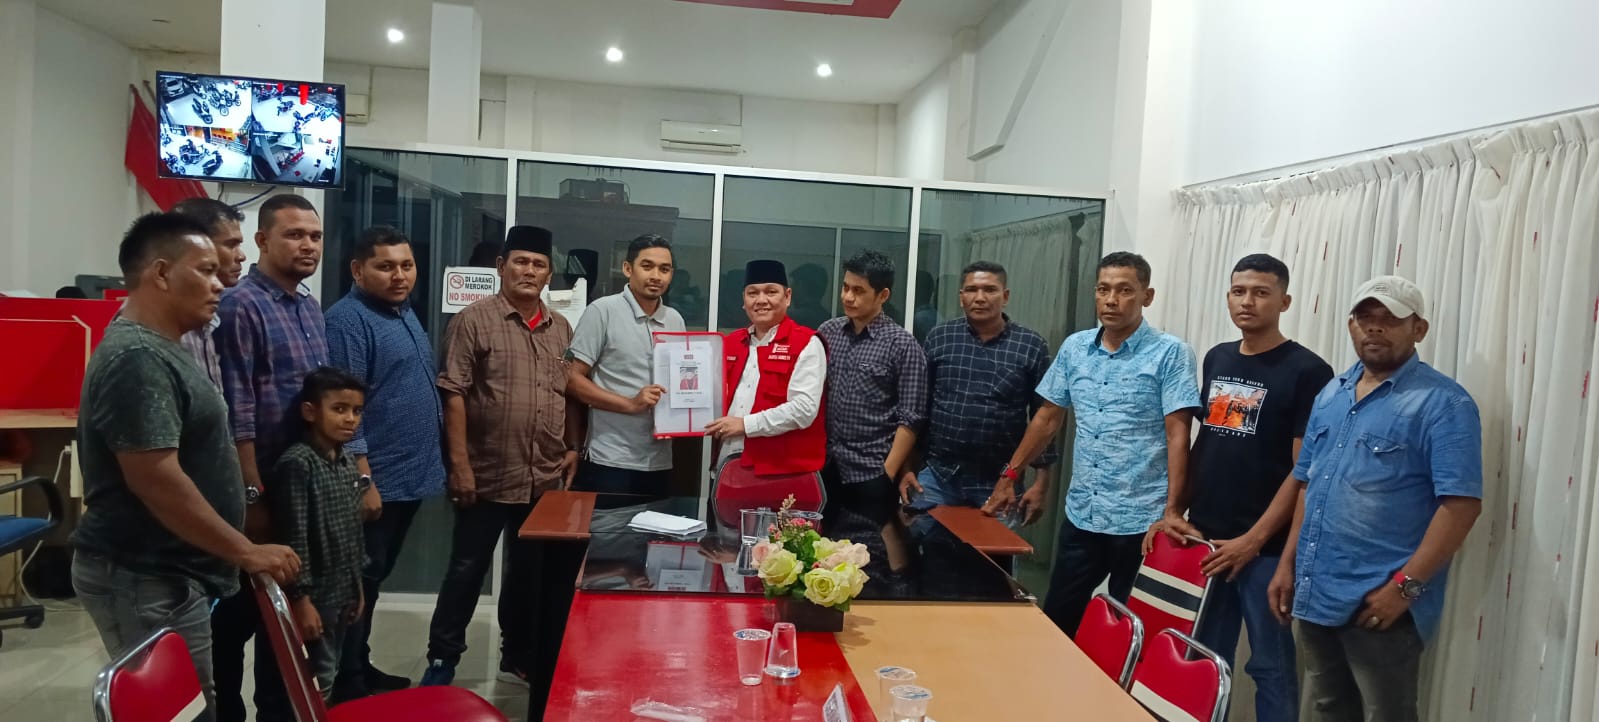 Atas ijin Dan Ridho Allah SWT  Tgk. M. Yunus Di Usung Kembali Menjadi Caleg DPRA dari Fraksi Partai Aceh